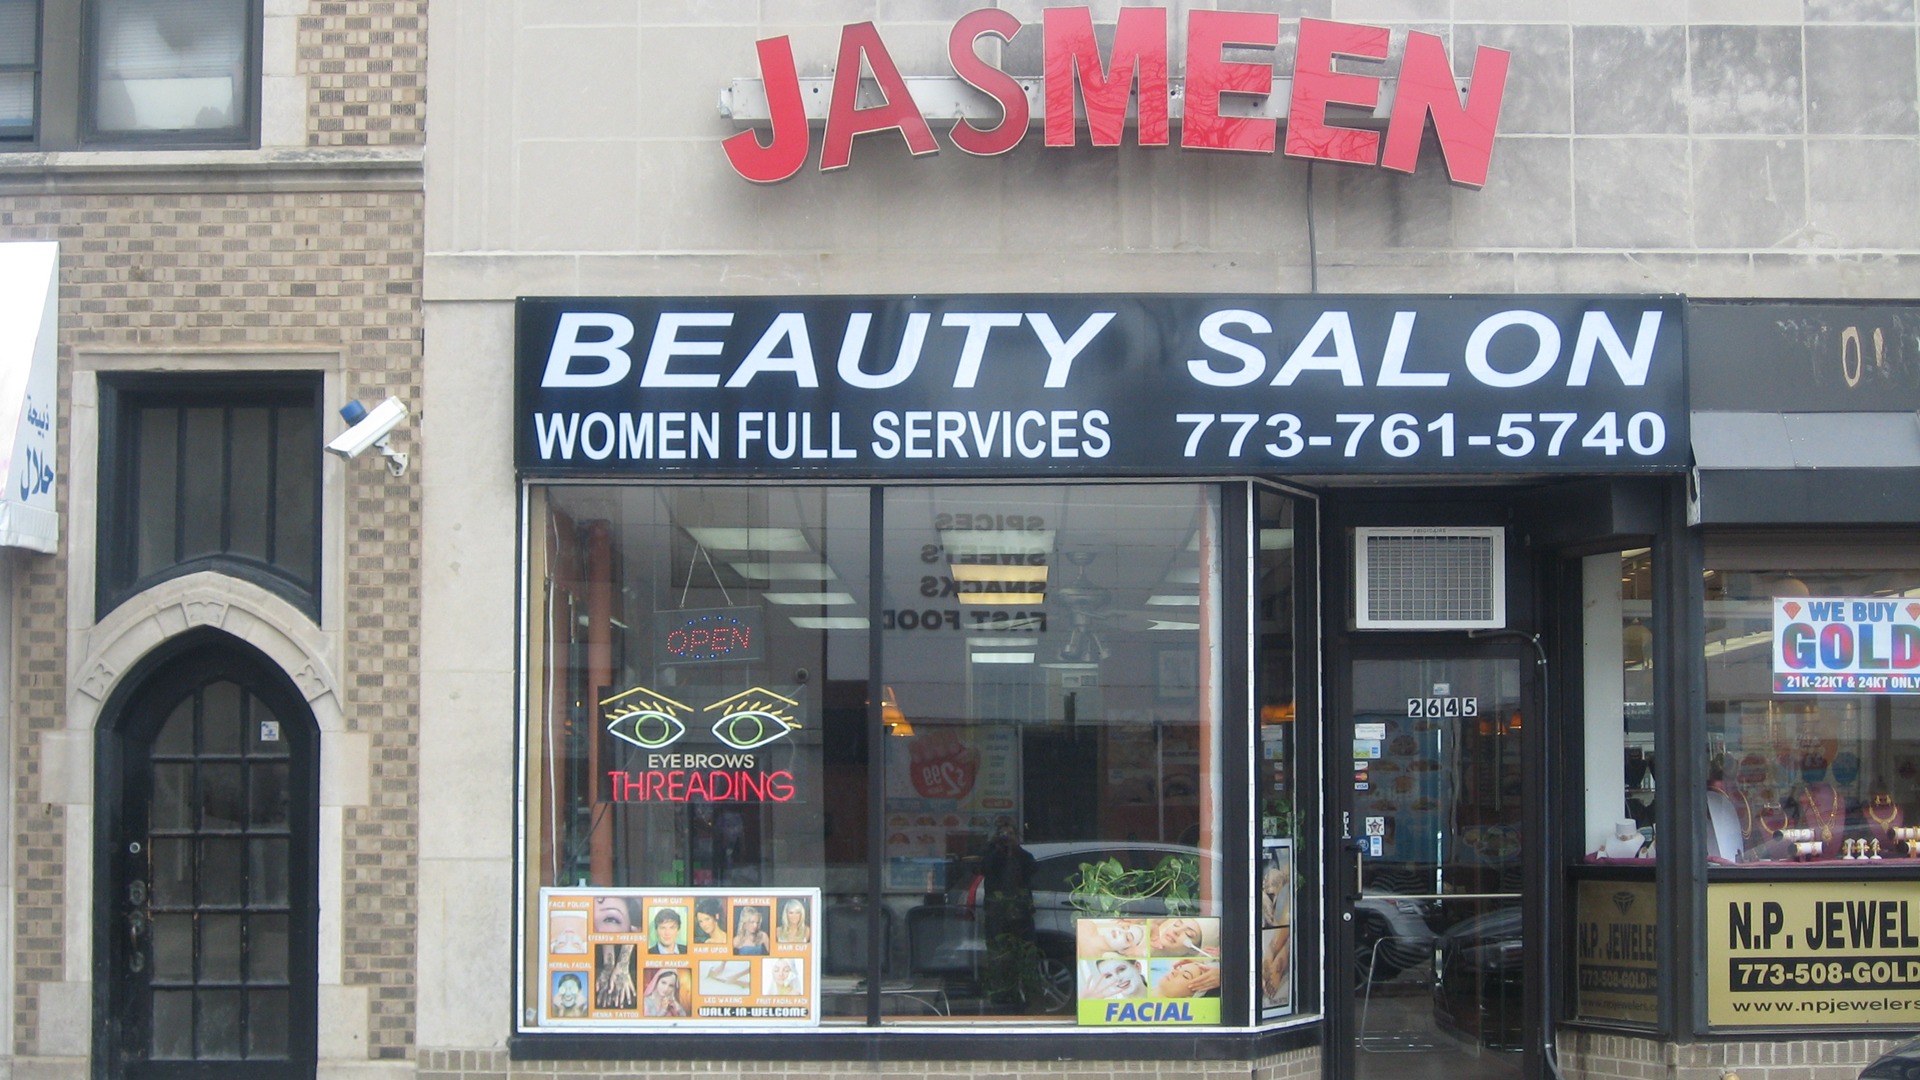 Jasmeen Beauty Salon